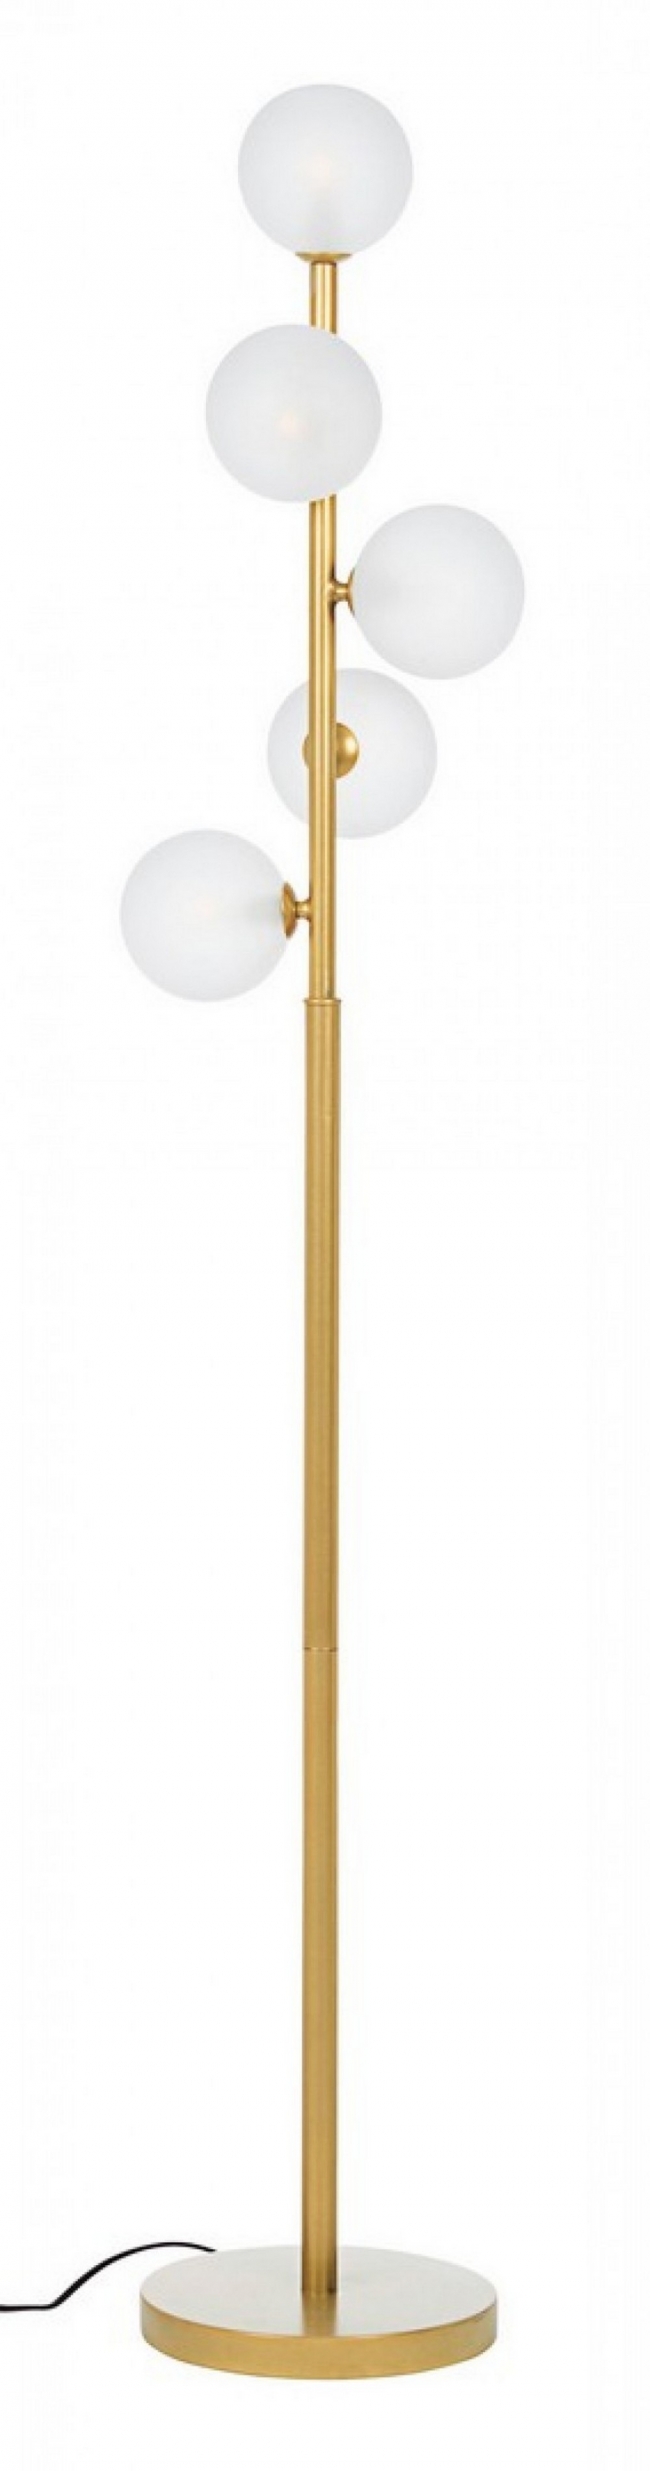  Μεταλλικό φωτιστικό δαπέδου "Balls" χρυσό 25x25x156.5εκ από την εταιρία Epilegin. 